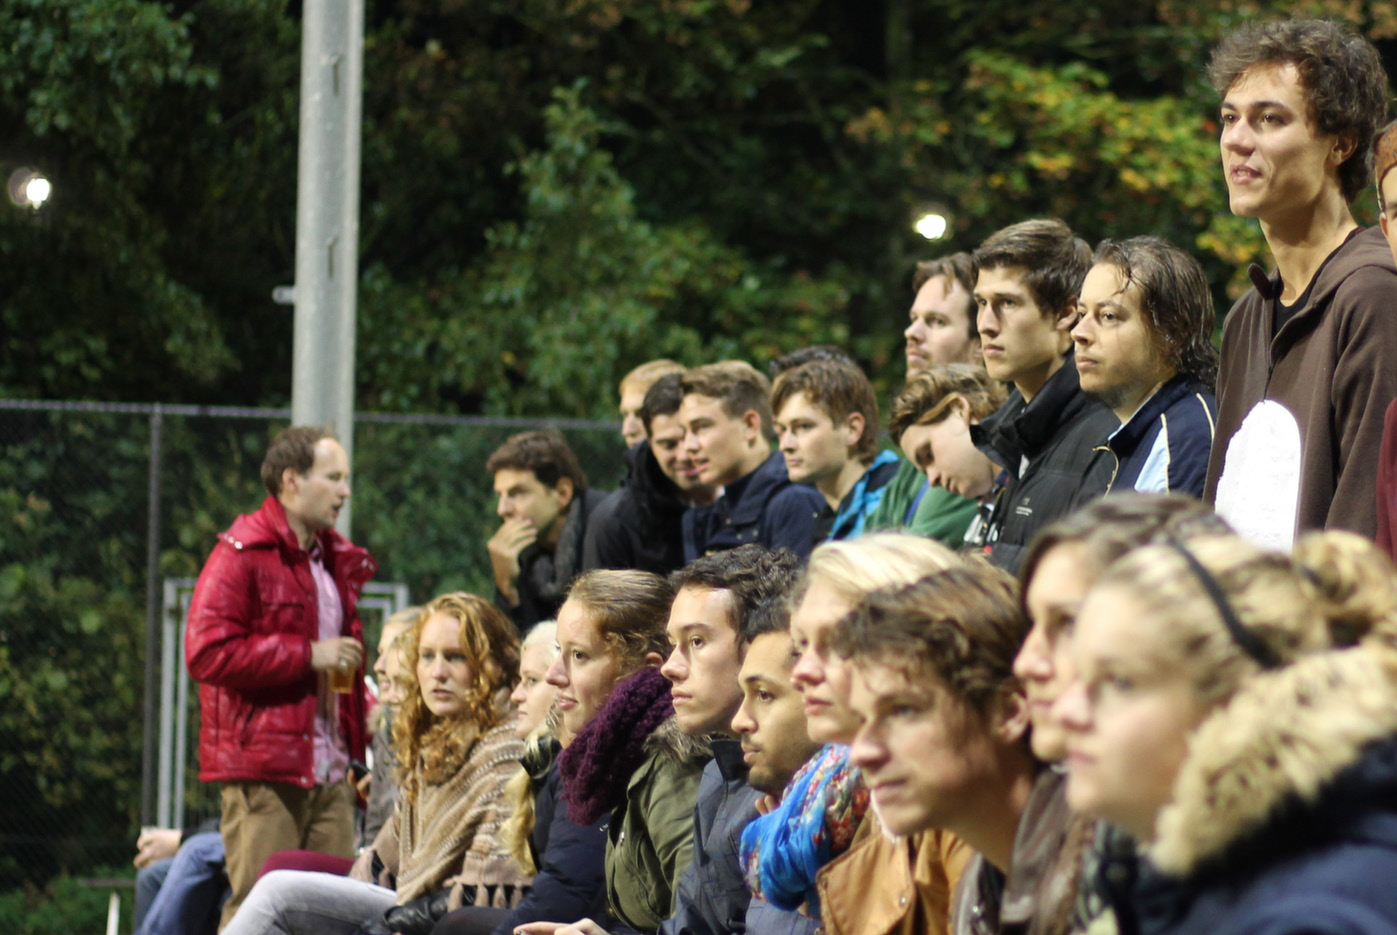 MOGELIJKHEDEN Introductieweek 2000 nieuwe studenten komen de sfeer proeven in studentenstad Eindhoven, deze week wordt er voor E.S.T. Fellenoord volop gepromoot.